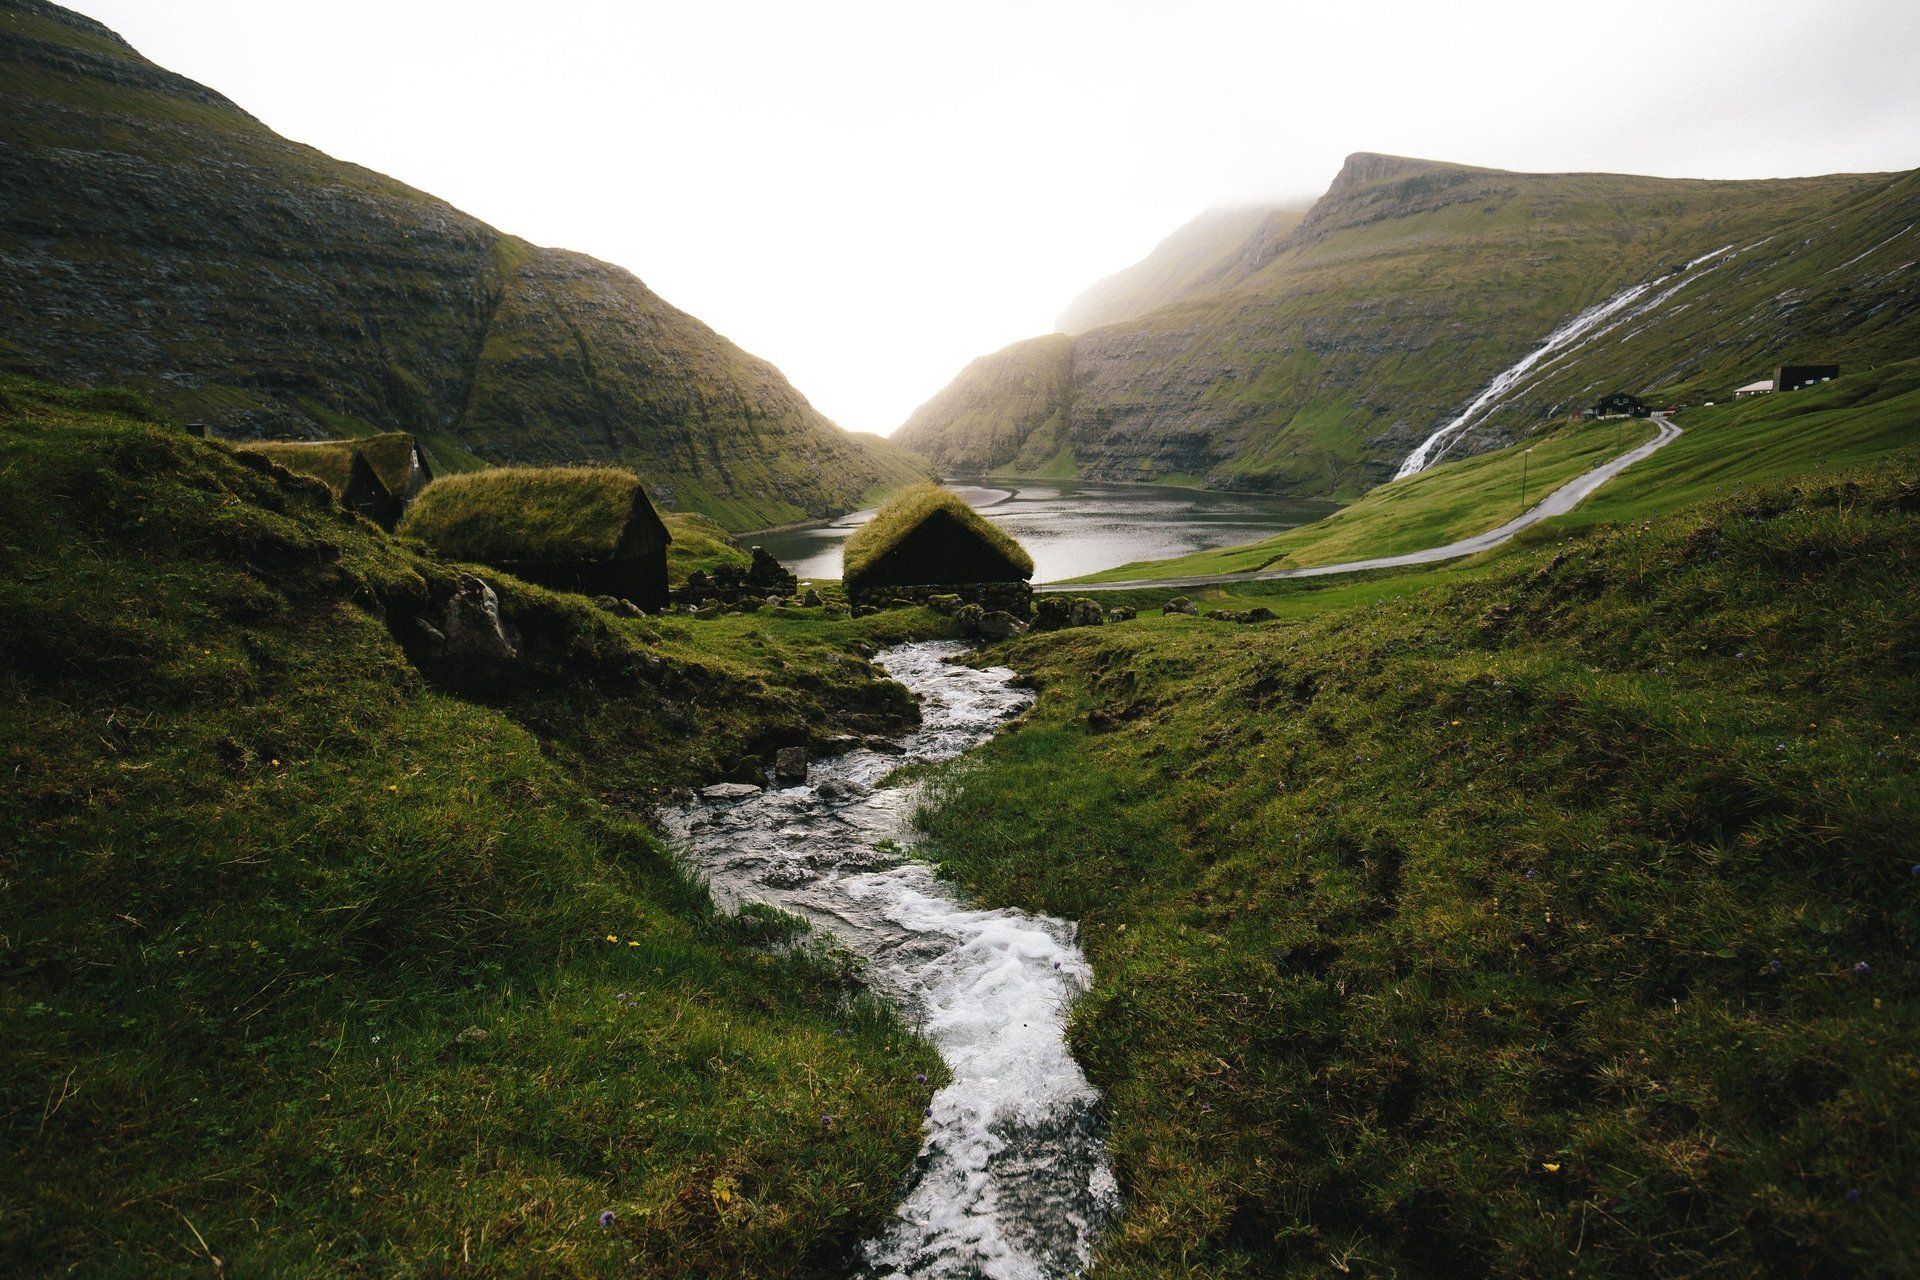 a stream flows through a lush green hillside